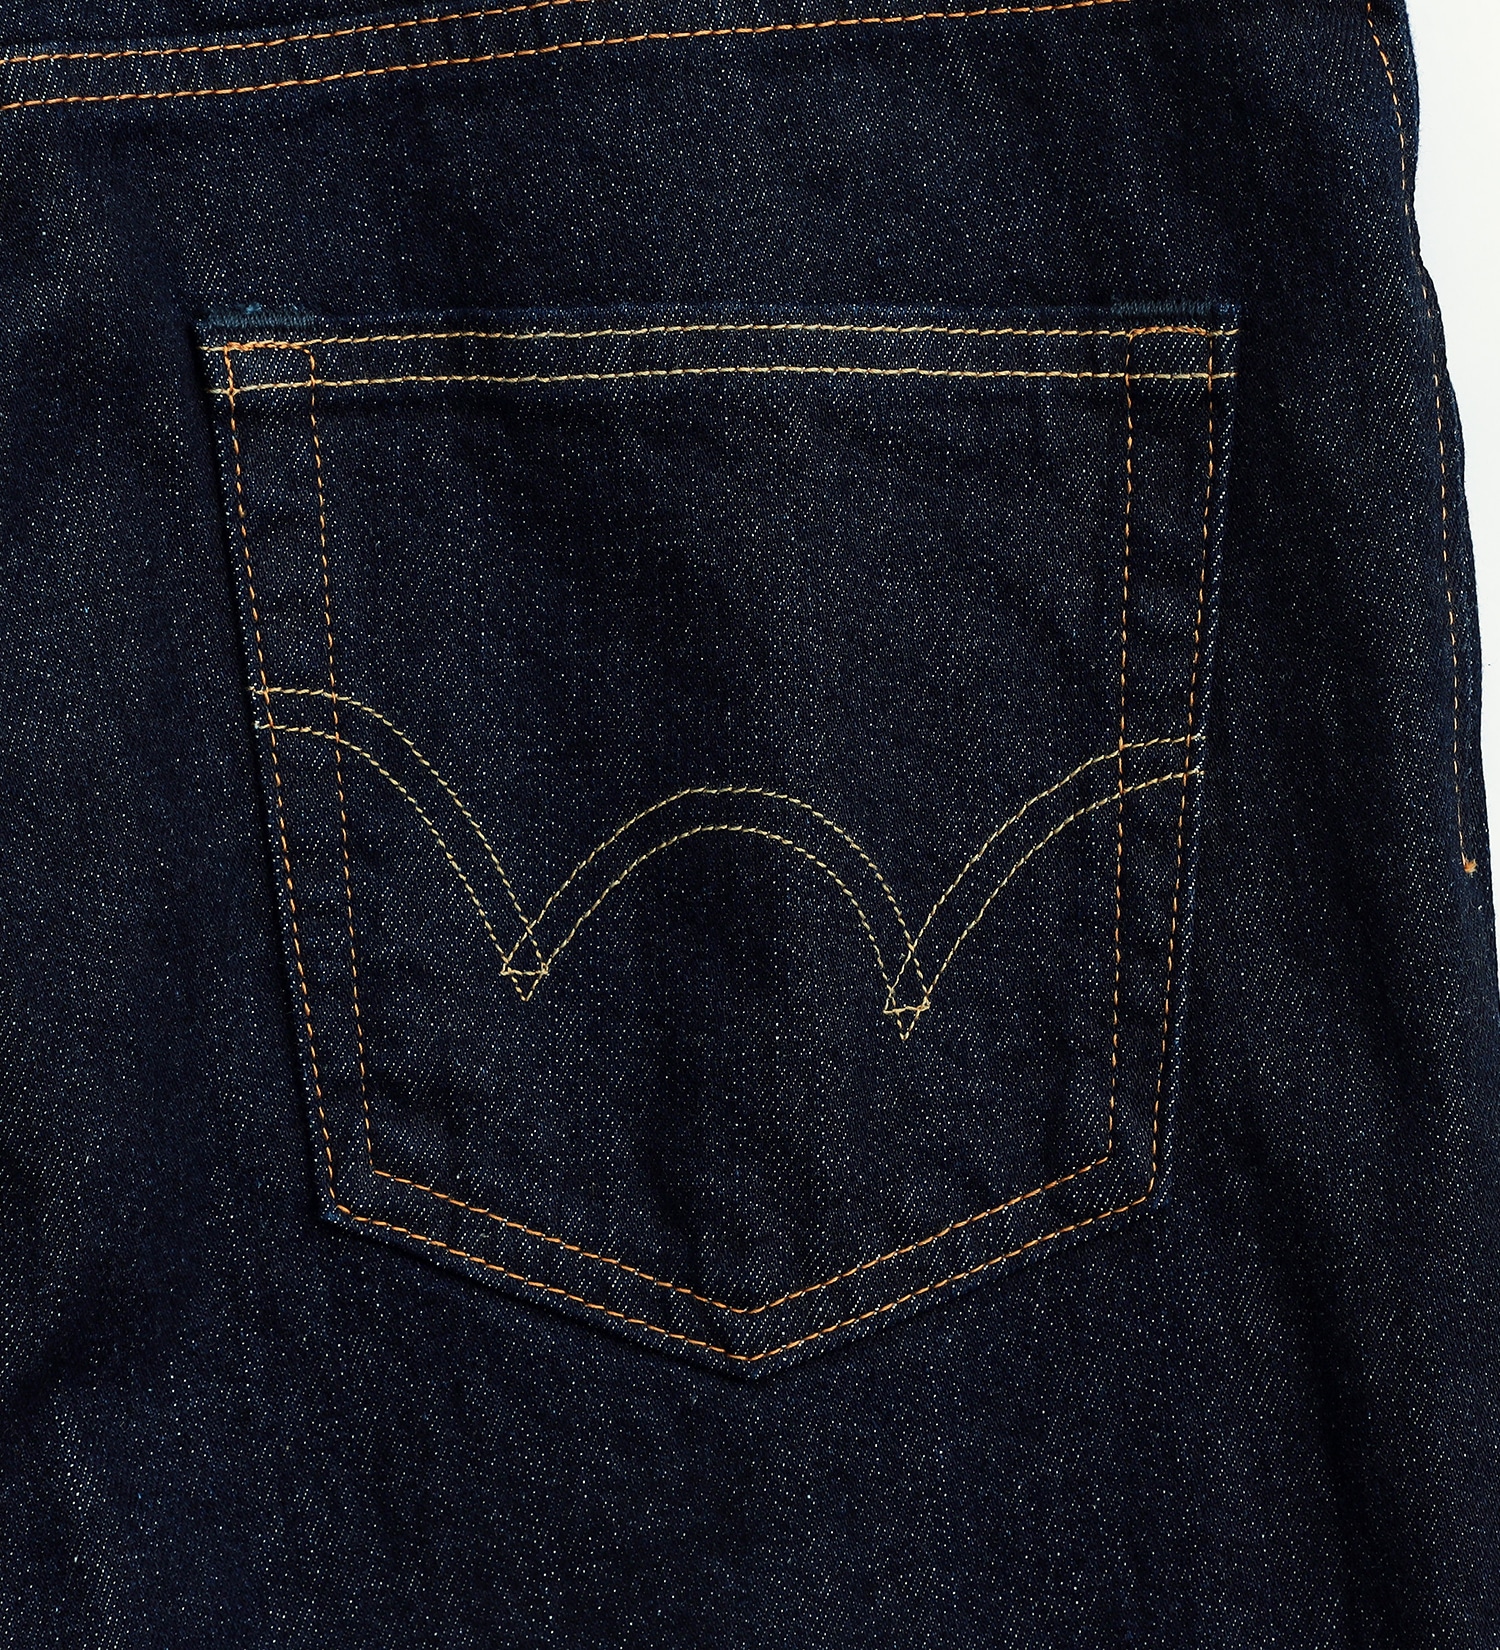 EDWIN(エドウイン)の【WEB限定】五・八デニム レギュラーストレート ふつうのジーンズ 日本製 MADE IN JAPAN|パンツ/デニムパンツ/メンズ|インディゴブルー